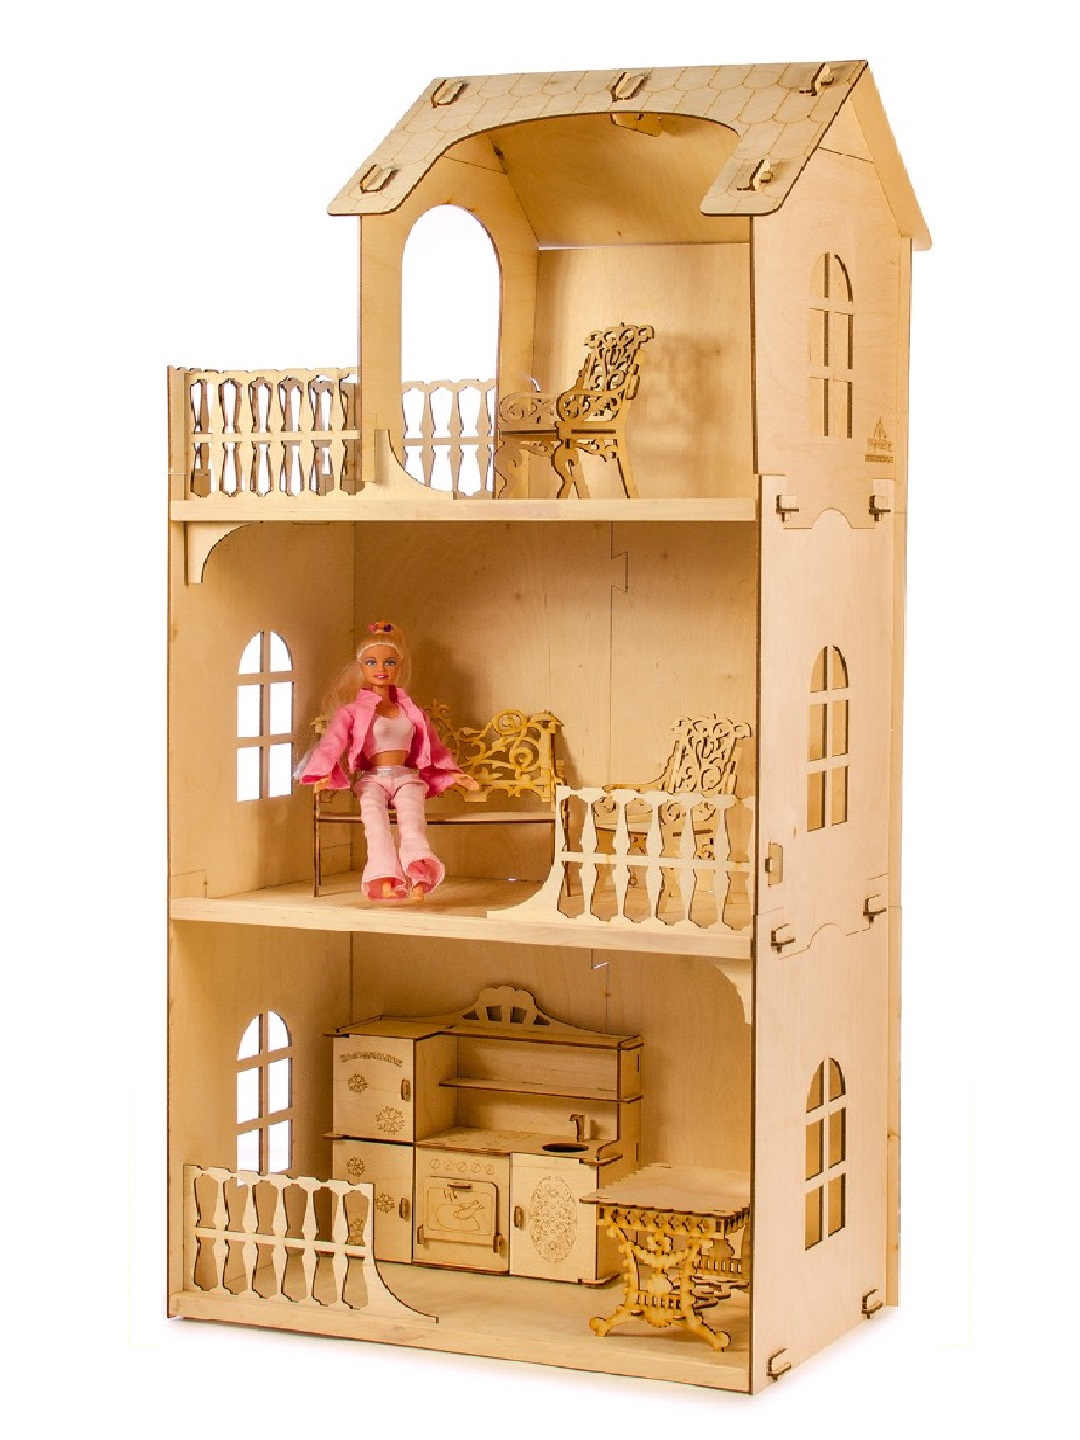 Barbie Дом Мечты трехэтажный с лифтом, бассейном, горкой и мебелью